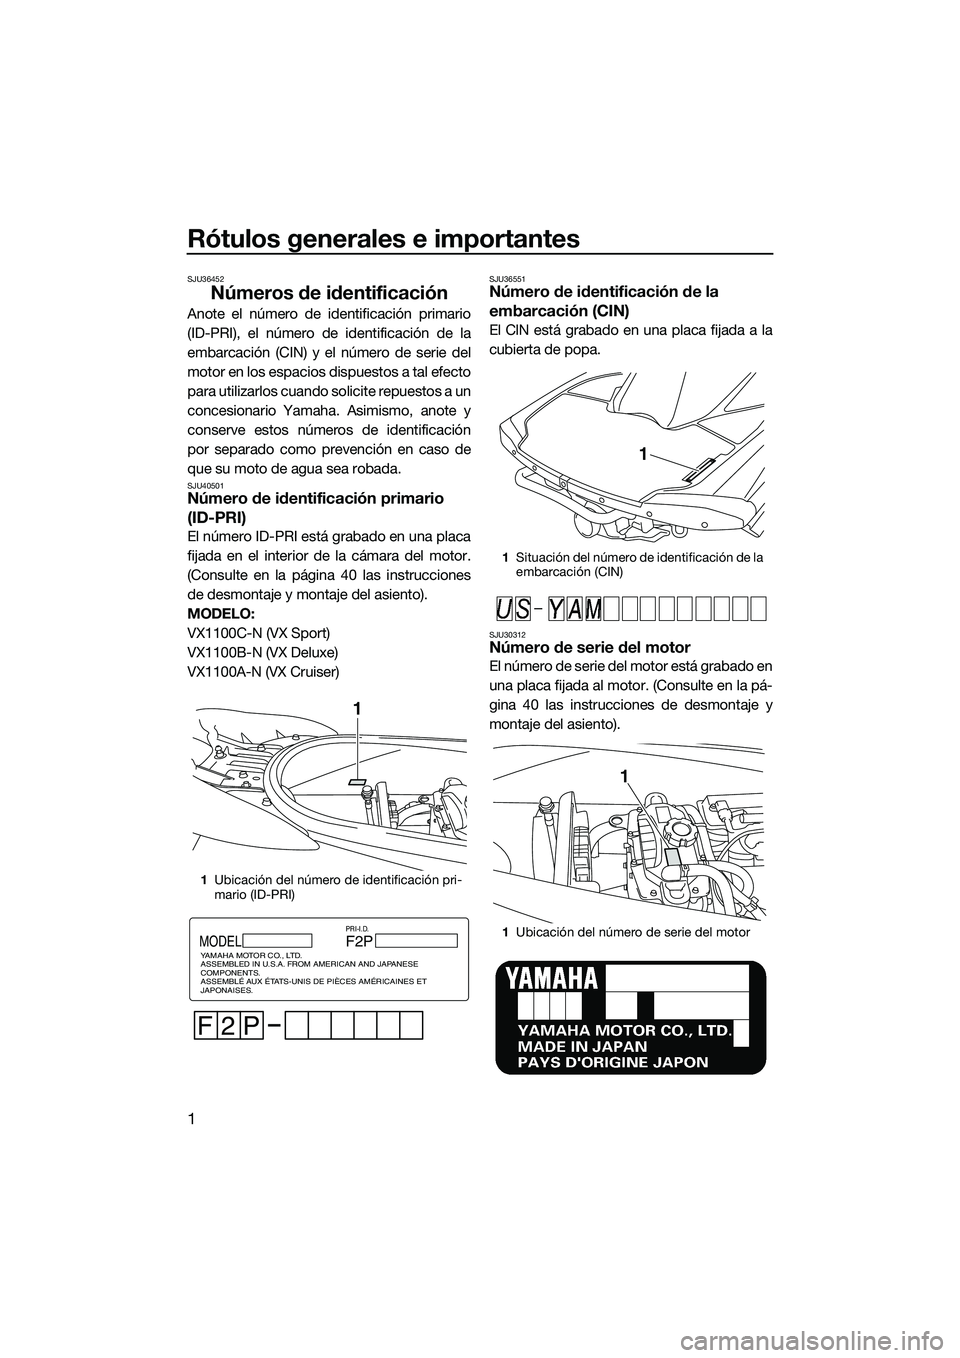 YAMAHA VX DELUXE 2014  Manuale de Empleo (in Spanish) Rótulos generales e importantes
1
SJU36452
Números de identificación
Anote el número de identificación primario
(ID-PRI), el número de identificación de la
embarcación (CIN) y el número de se